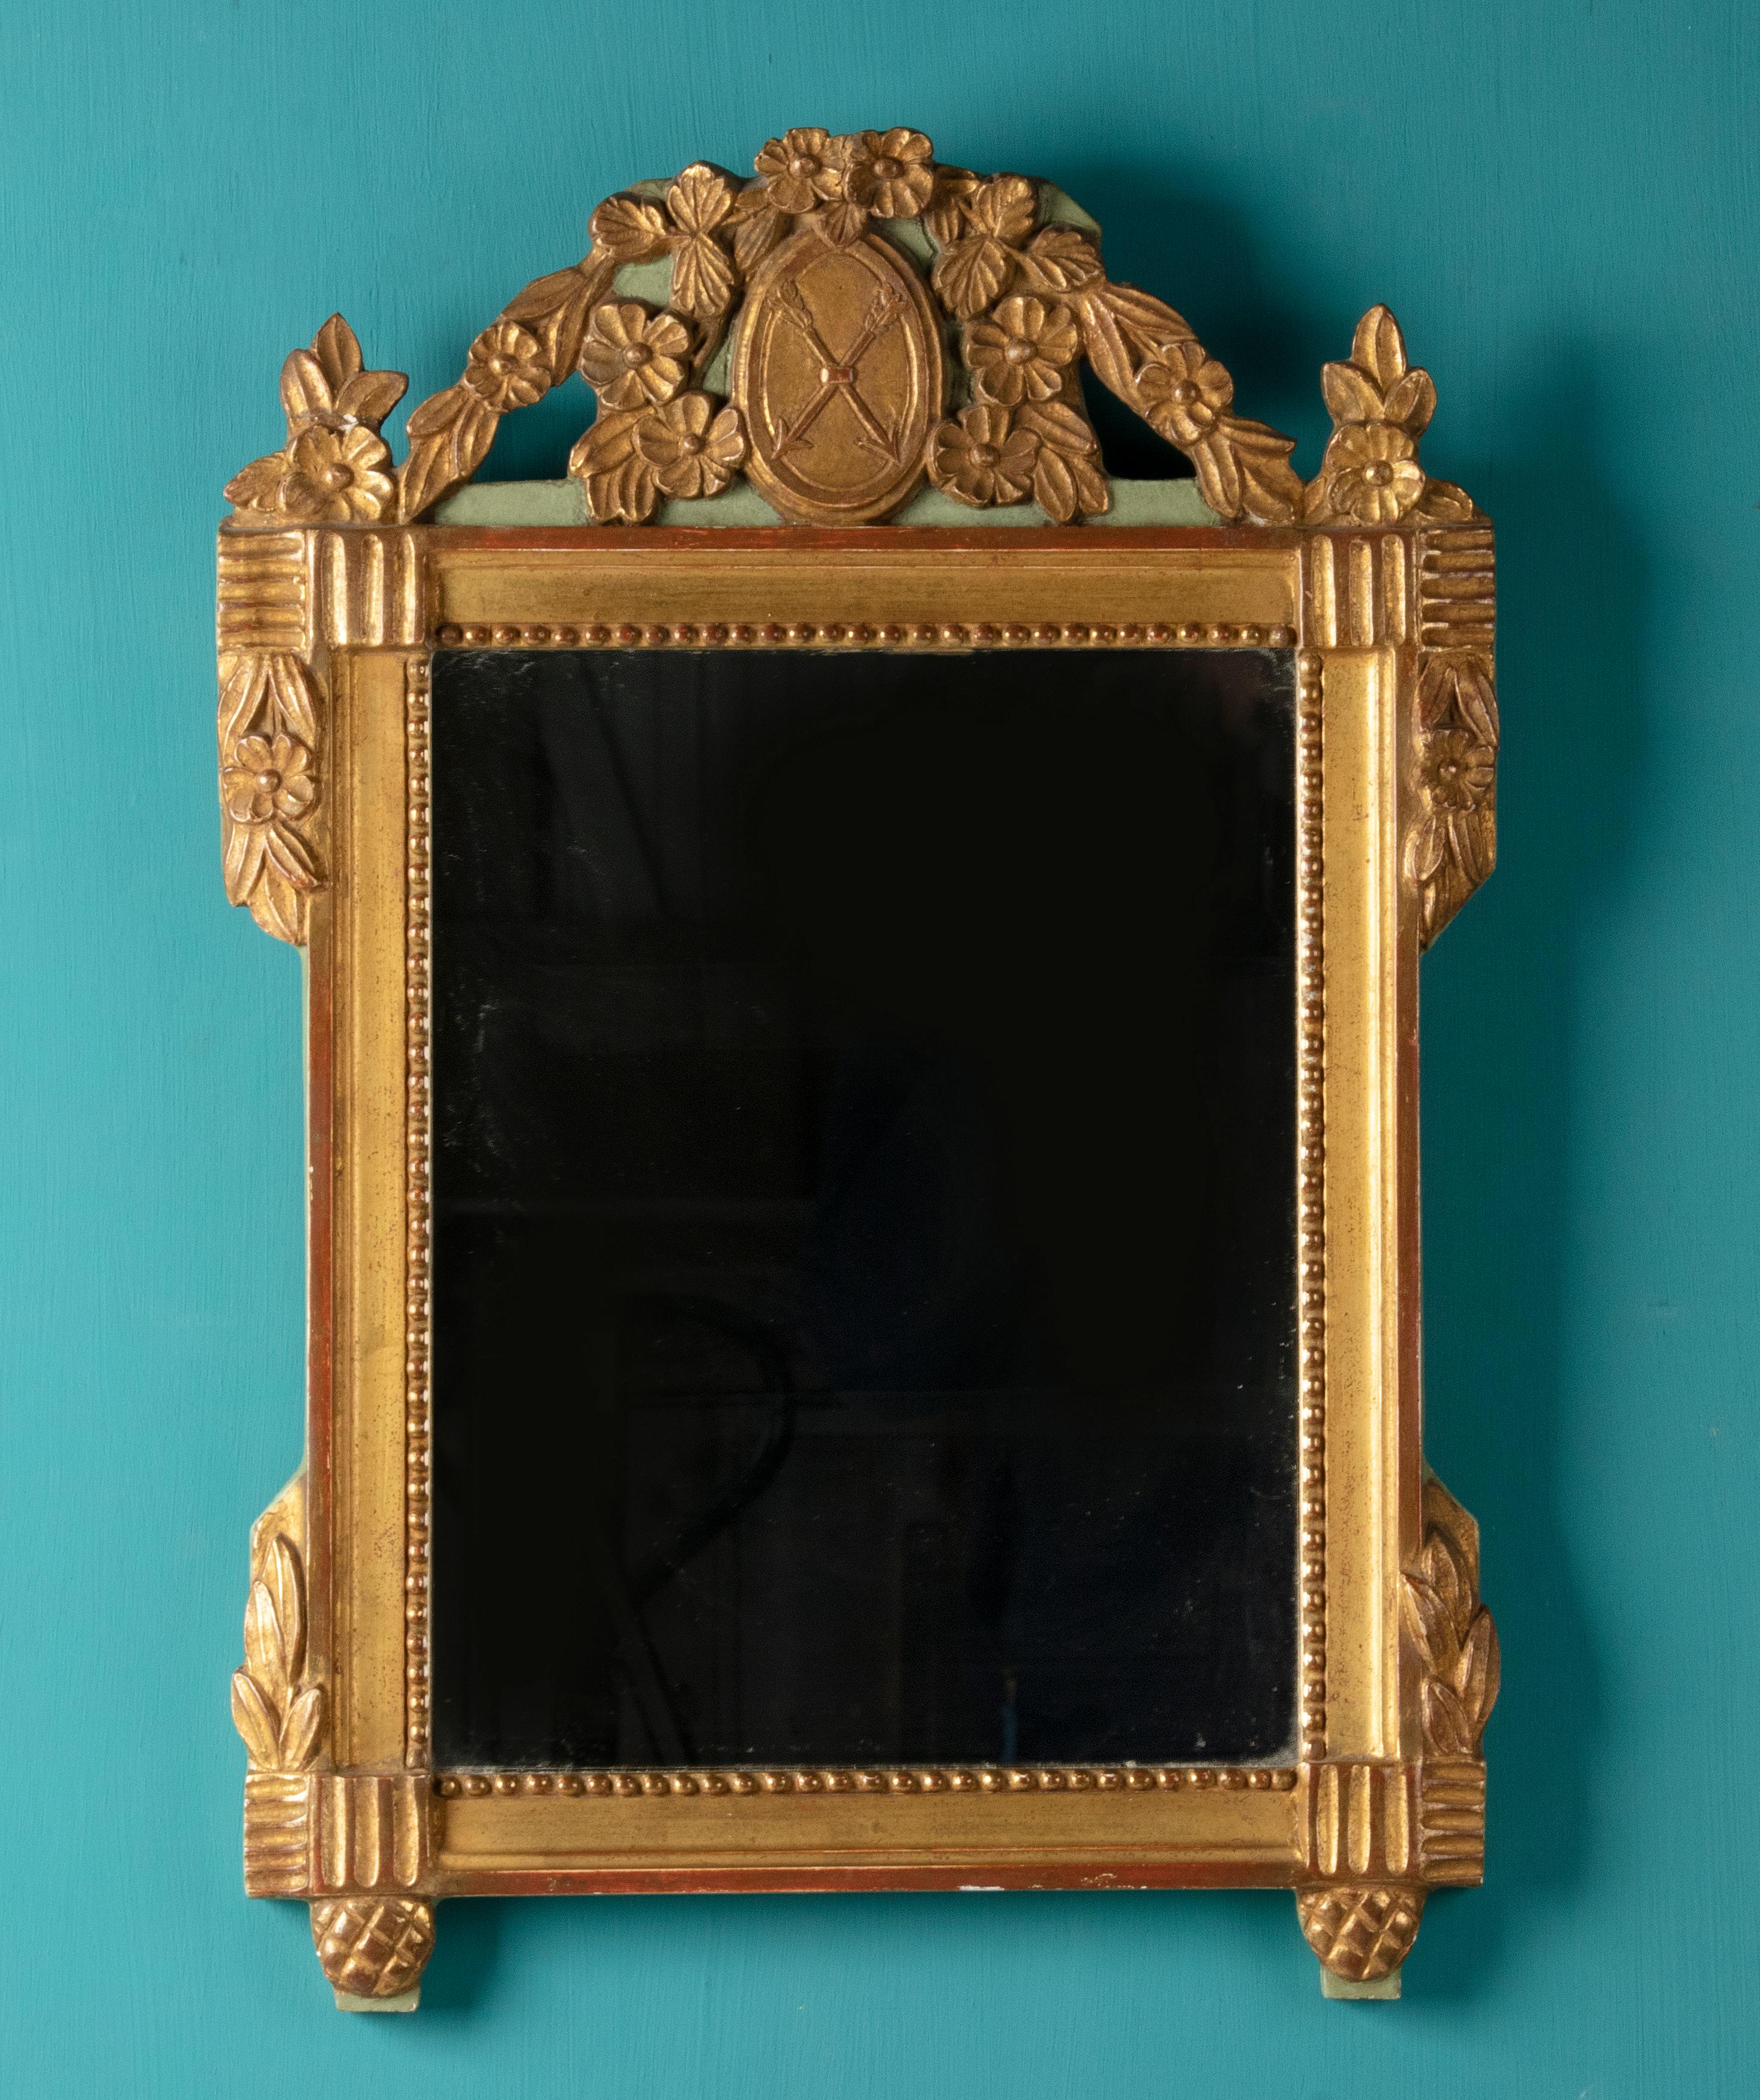 Miroir décoratif de style Louis XVI. Le miroir date d'environ 1930 et est fait d'une sorte de moulage en résine, puis doré. Le miroir est fabriqué d'après un modèle ancien.